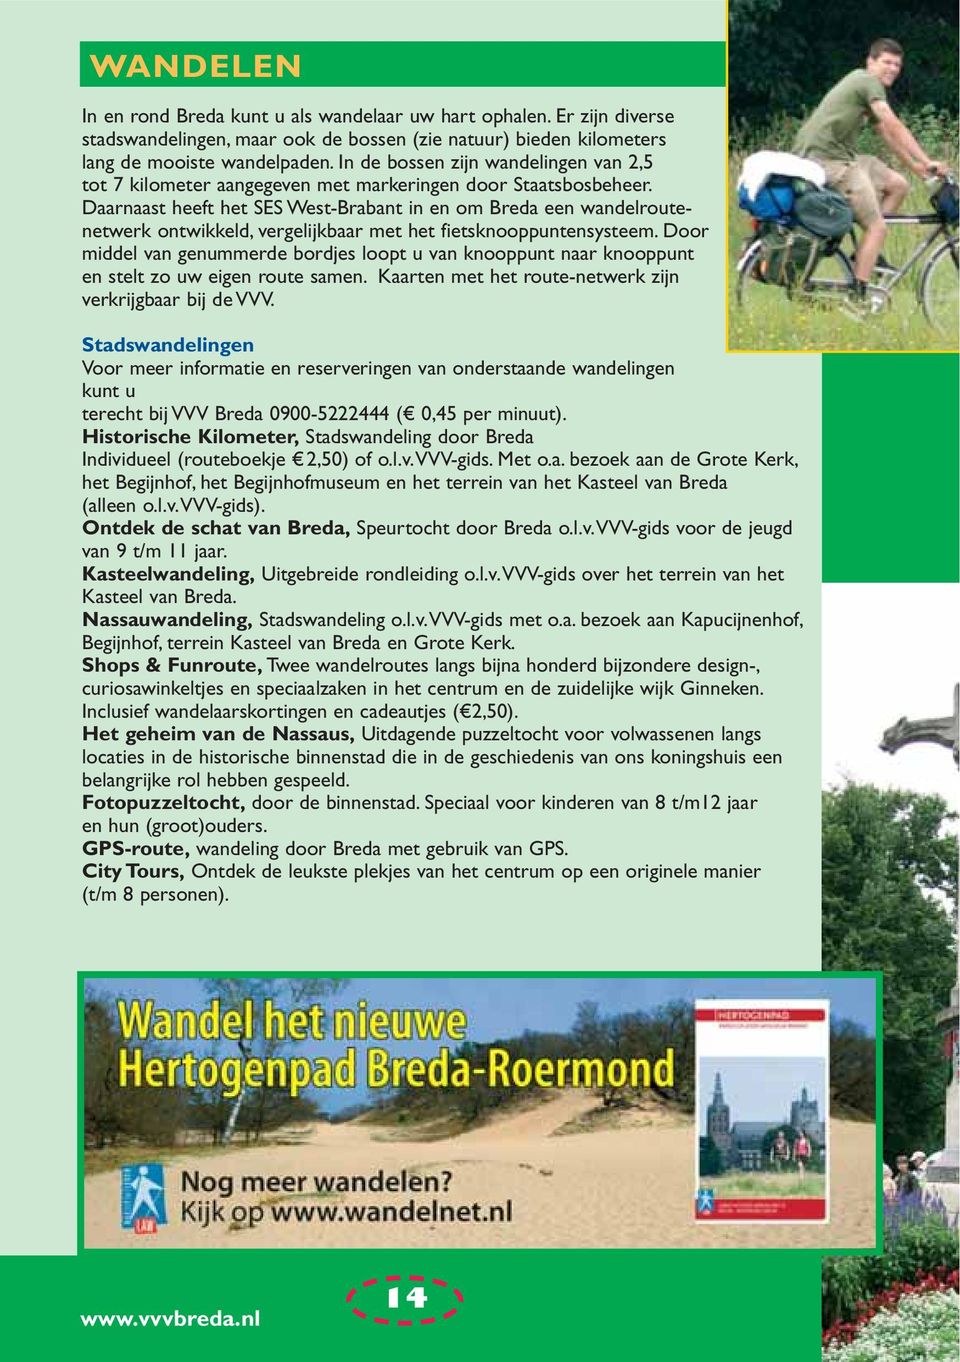 Daarnaast heeft het SES West-Brabant in en om Breda een wandelroutenetwerk ontwikkeld, vergelijkbaar met het fietsknooppuntensysteem.